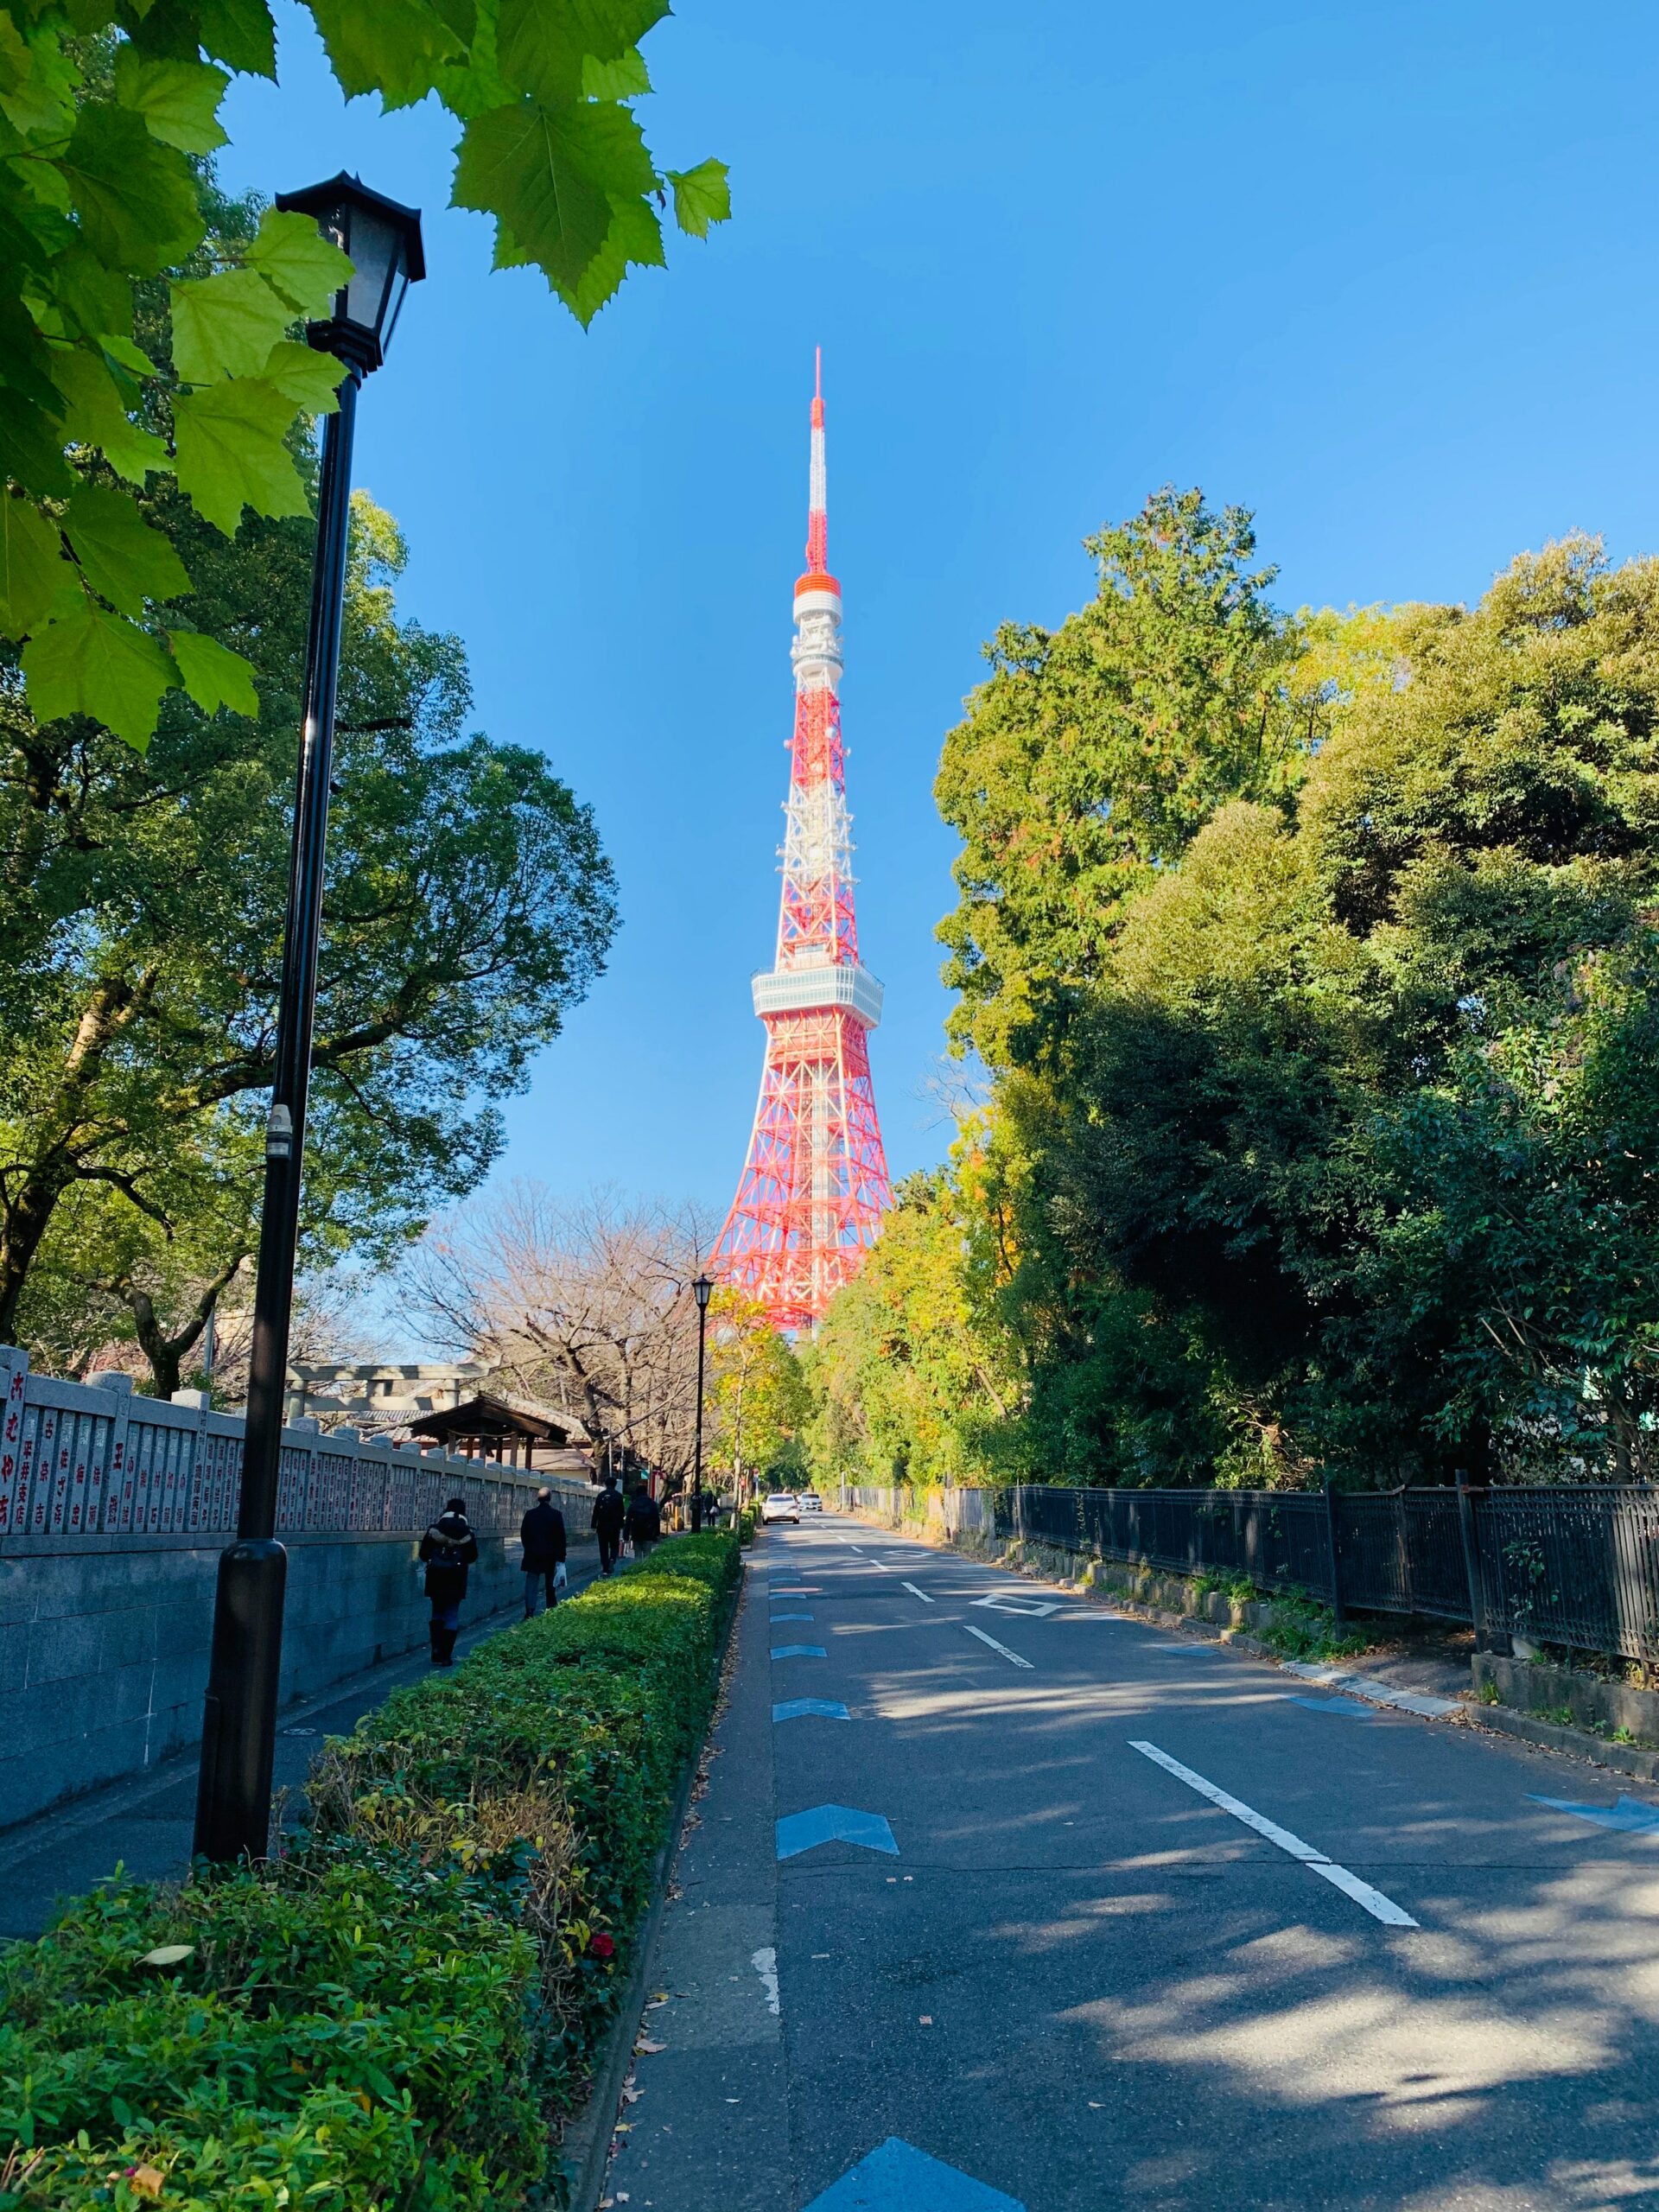 ทัวร์ญี่ปุ่นกรุ๊ปเหมา โตเกียวทาวเวอร์ หอคอยสูง สุดยอดแลนด์มาร์คของประเทศญี่ปุ่น